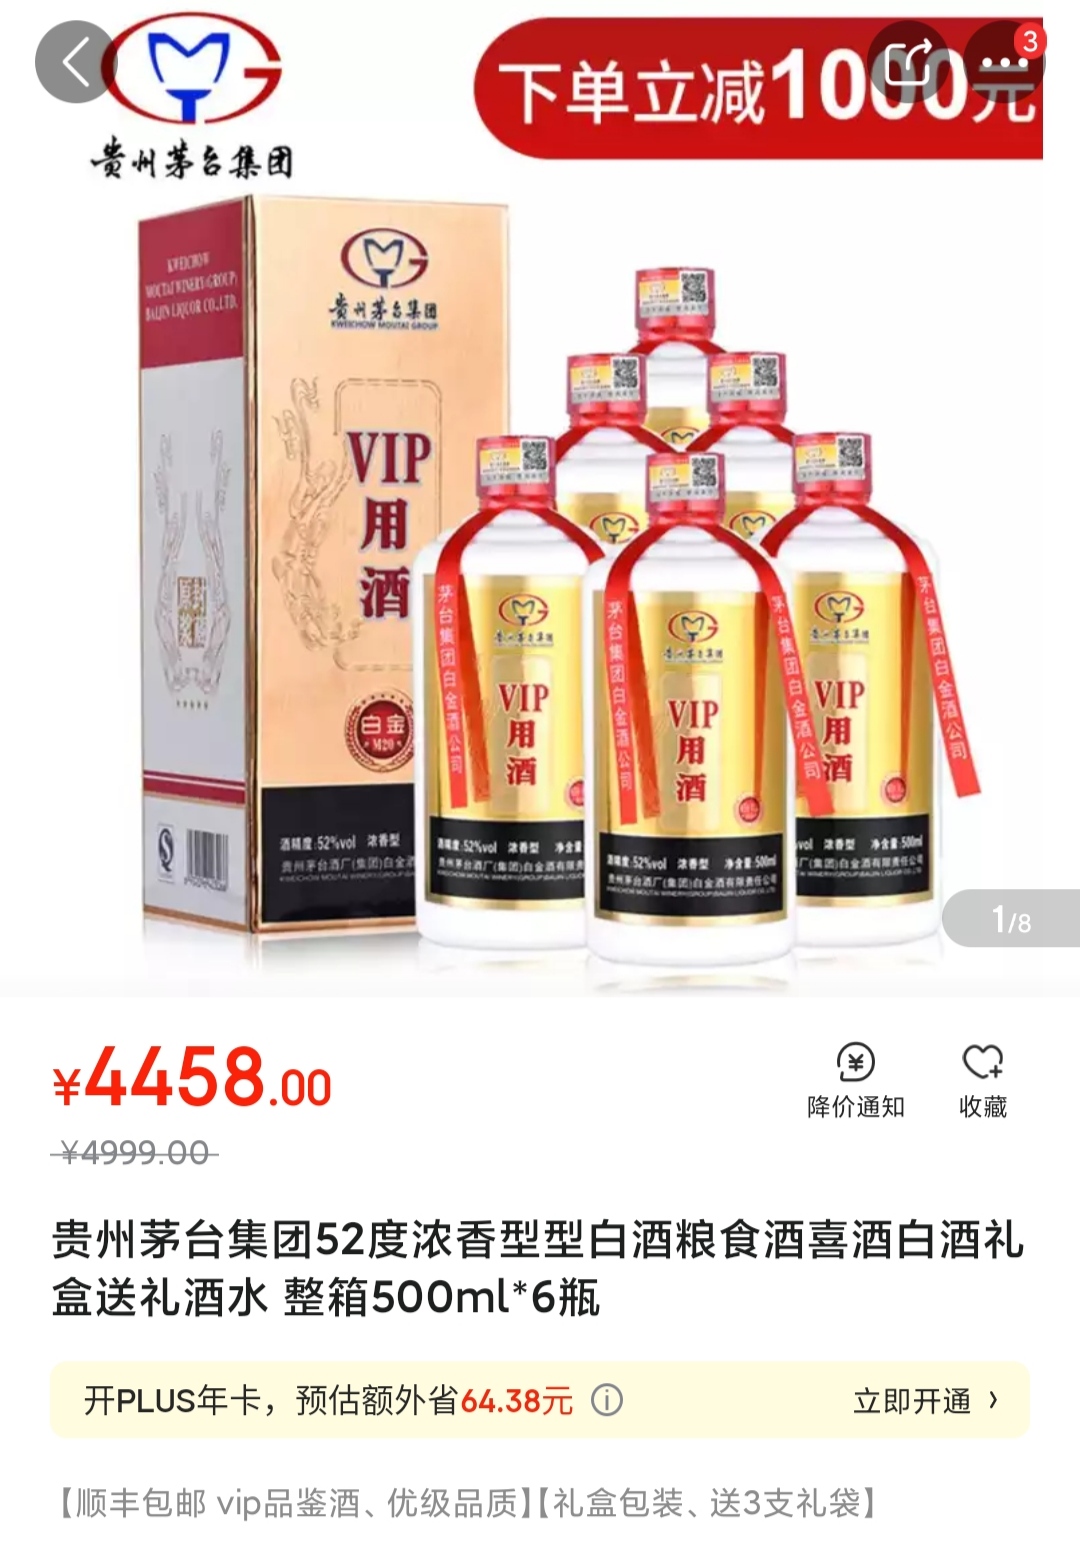 一箱白金VIP用酒，有人卖4458元，有人卖399元，价格为何如此悬殊？